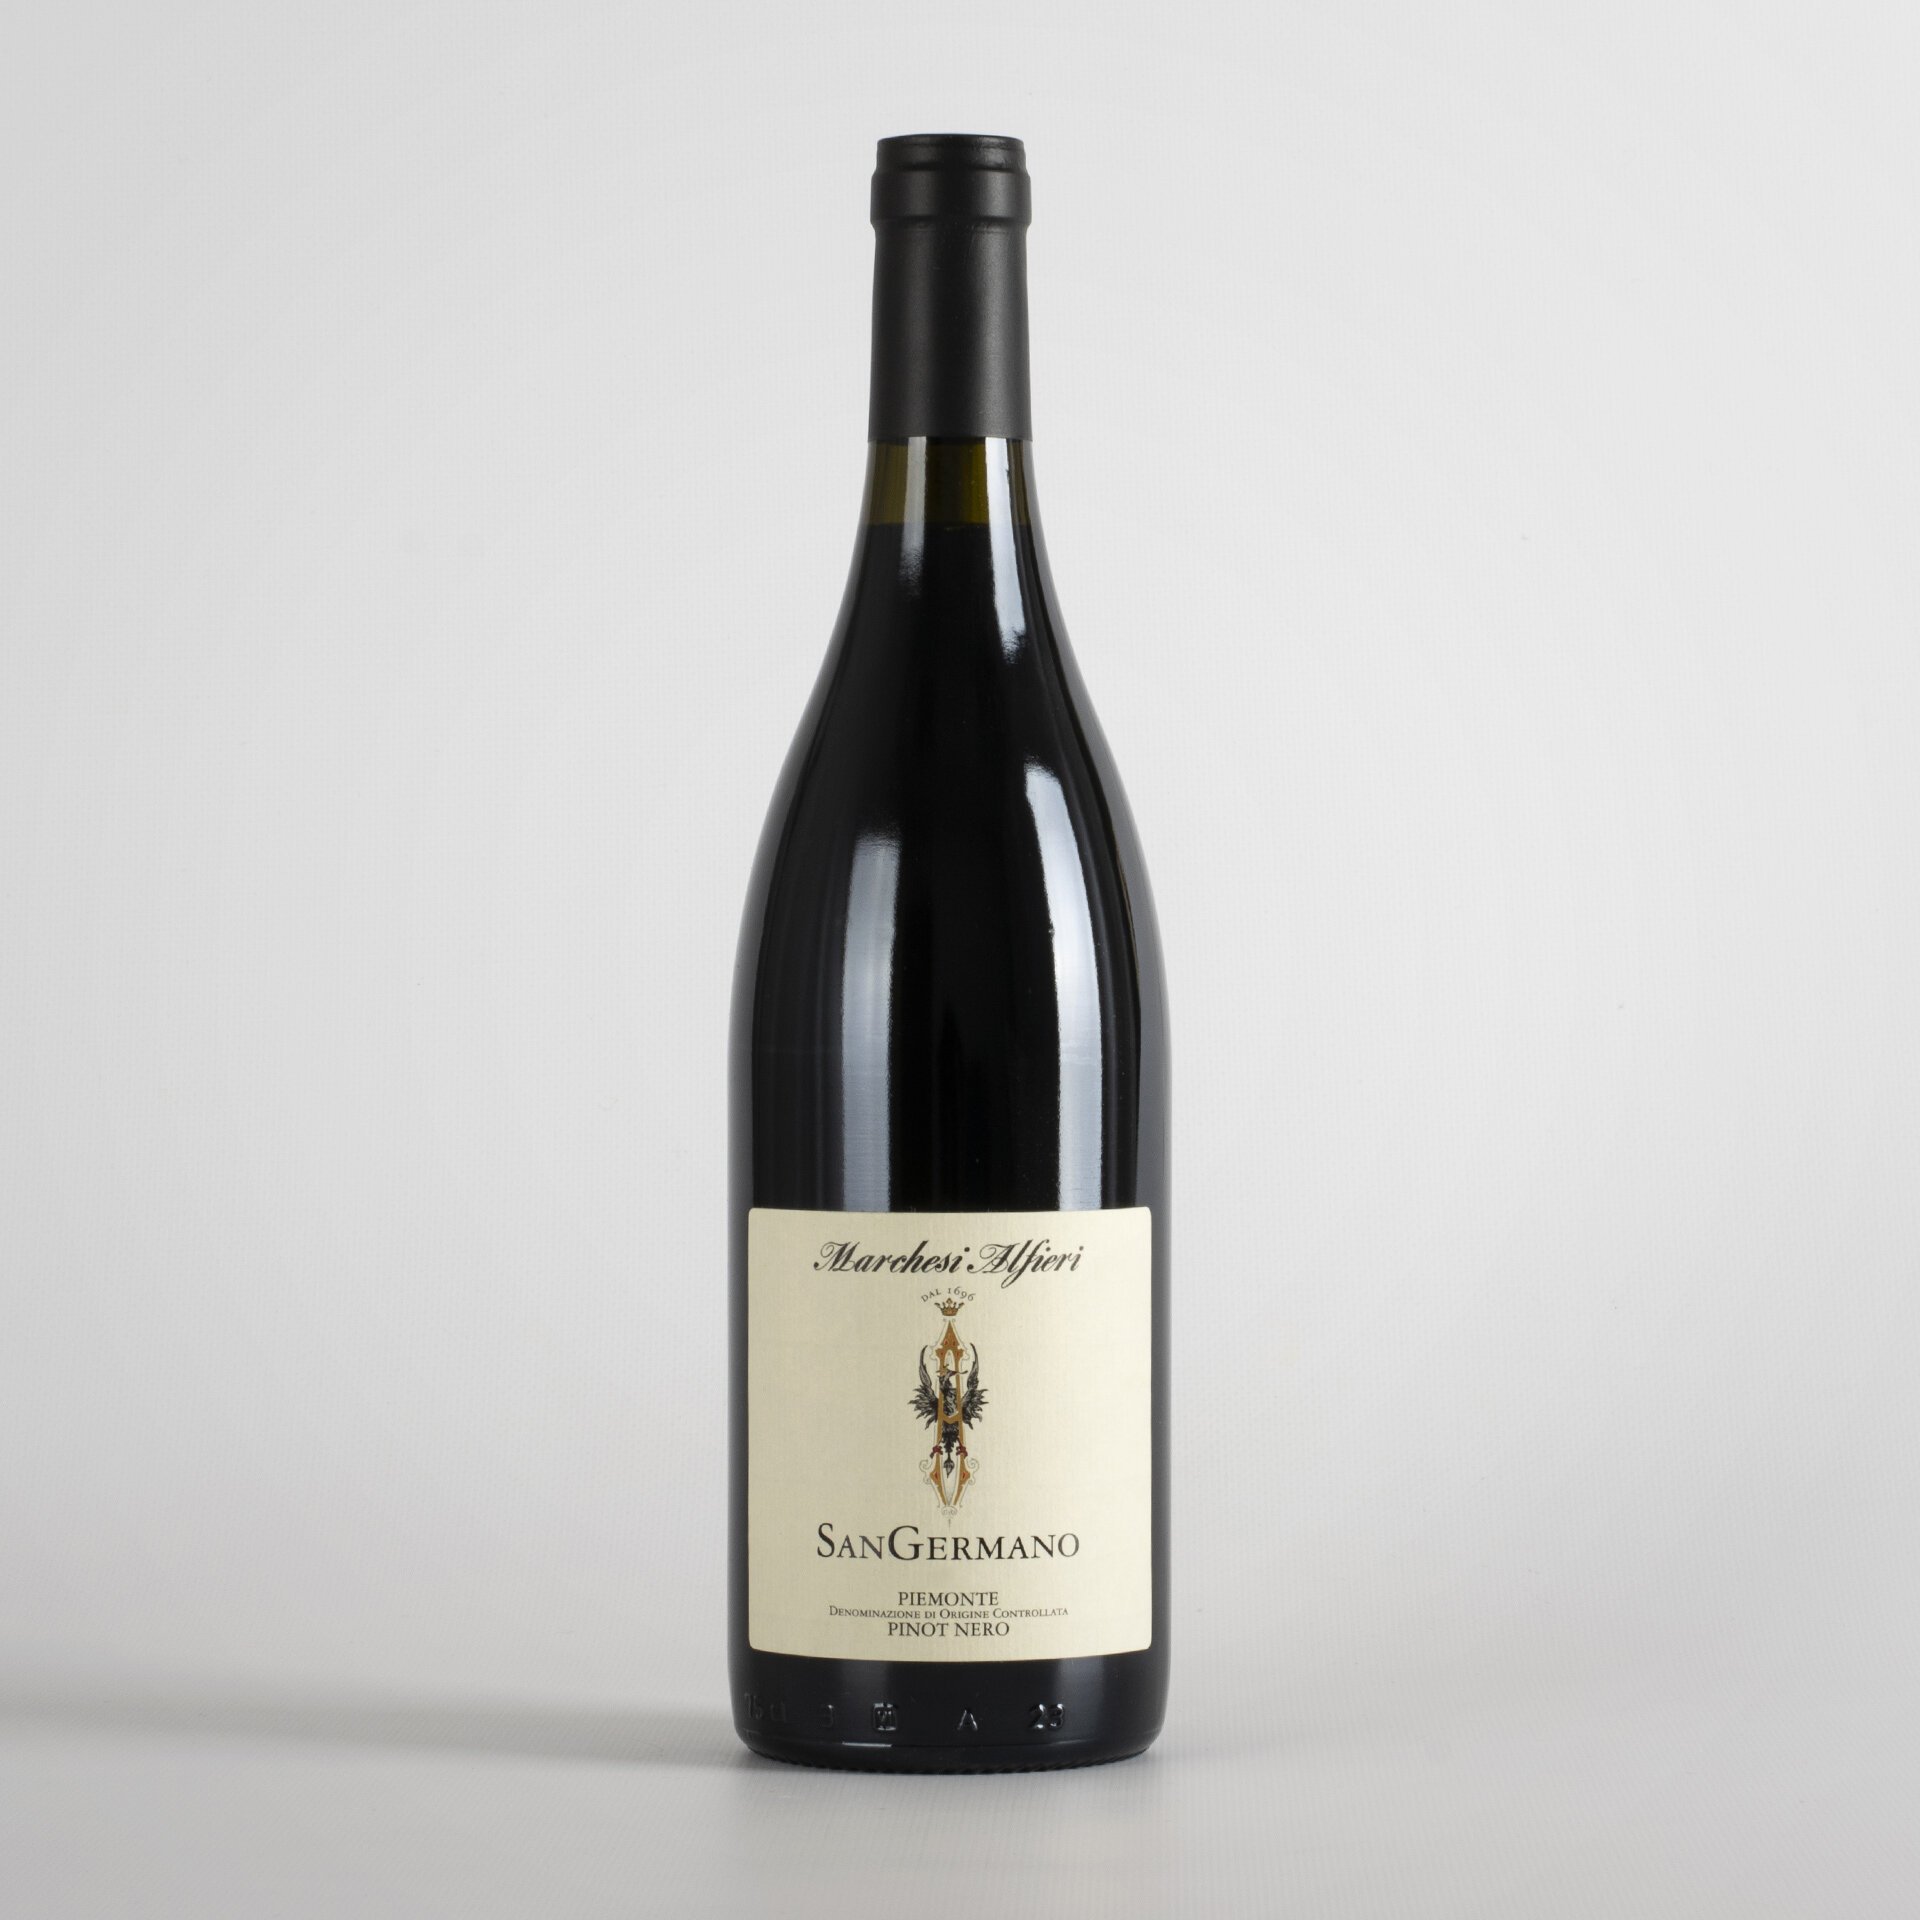 Piemonte Pinot Nero San Germano 2020